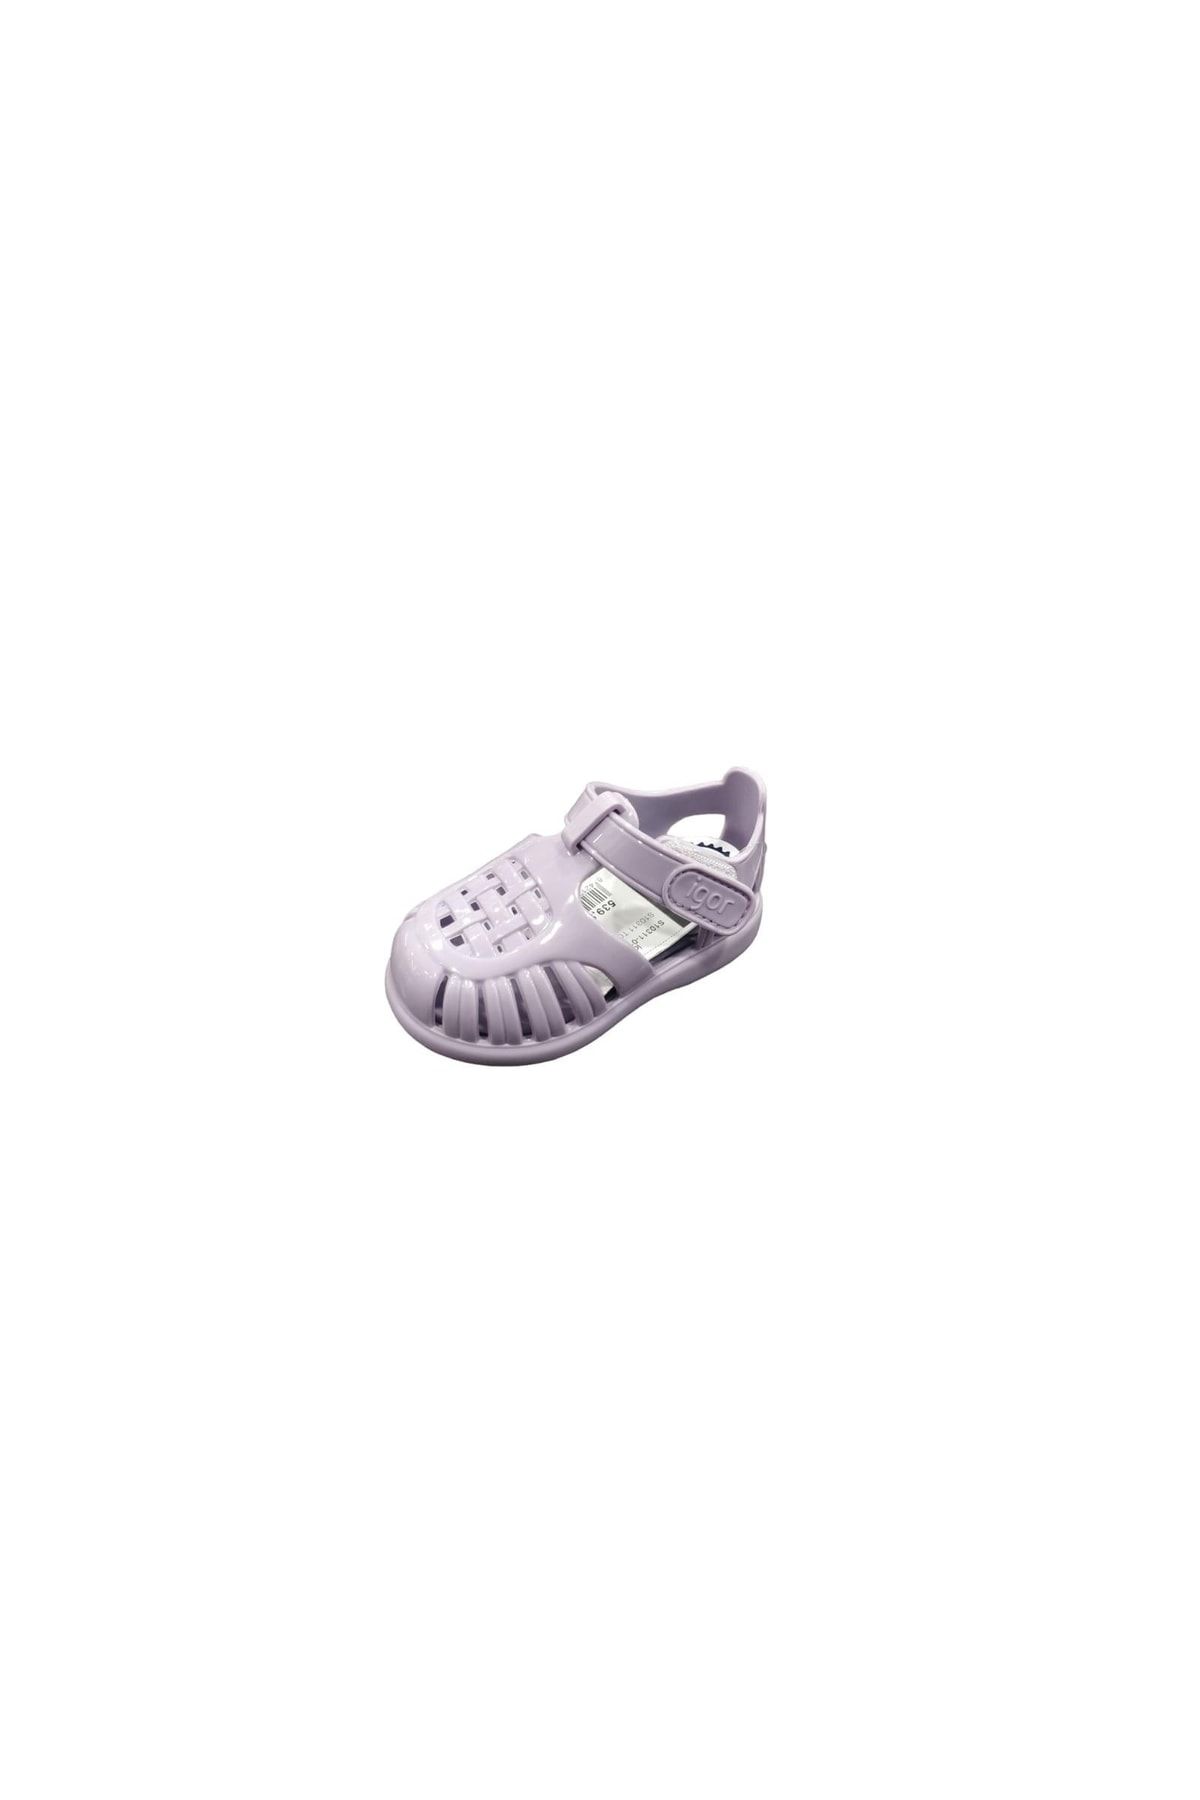 IGOR S10311-018 Tobby Gloss Bebek Çocuk Sandalet